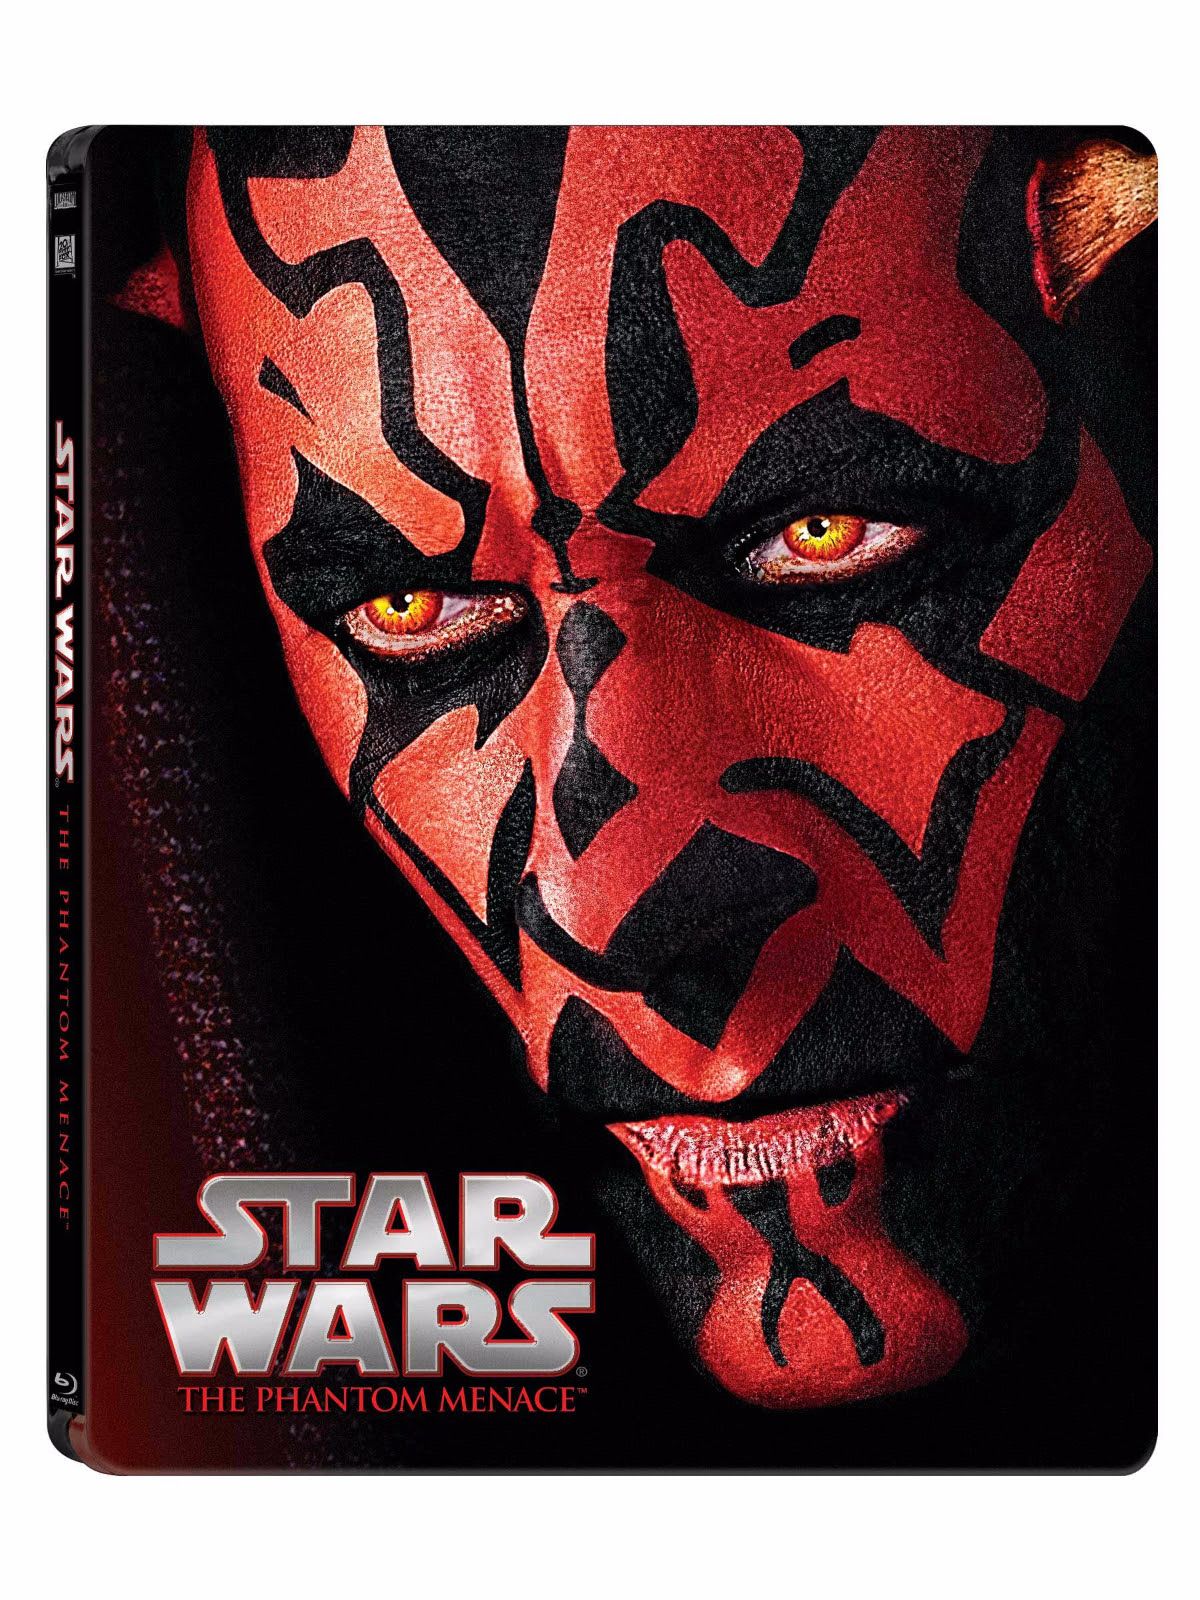 Star Wars Blu-ray Steelbooks Return of the Jedi